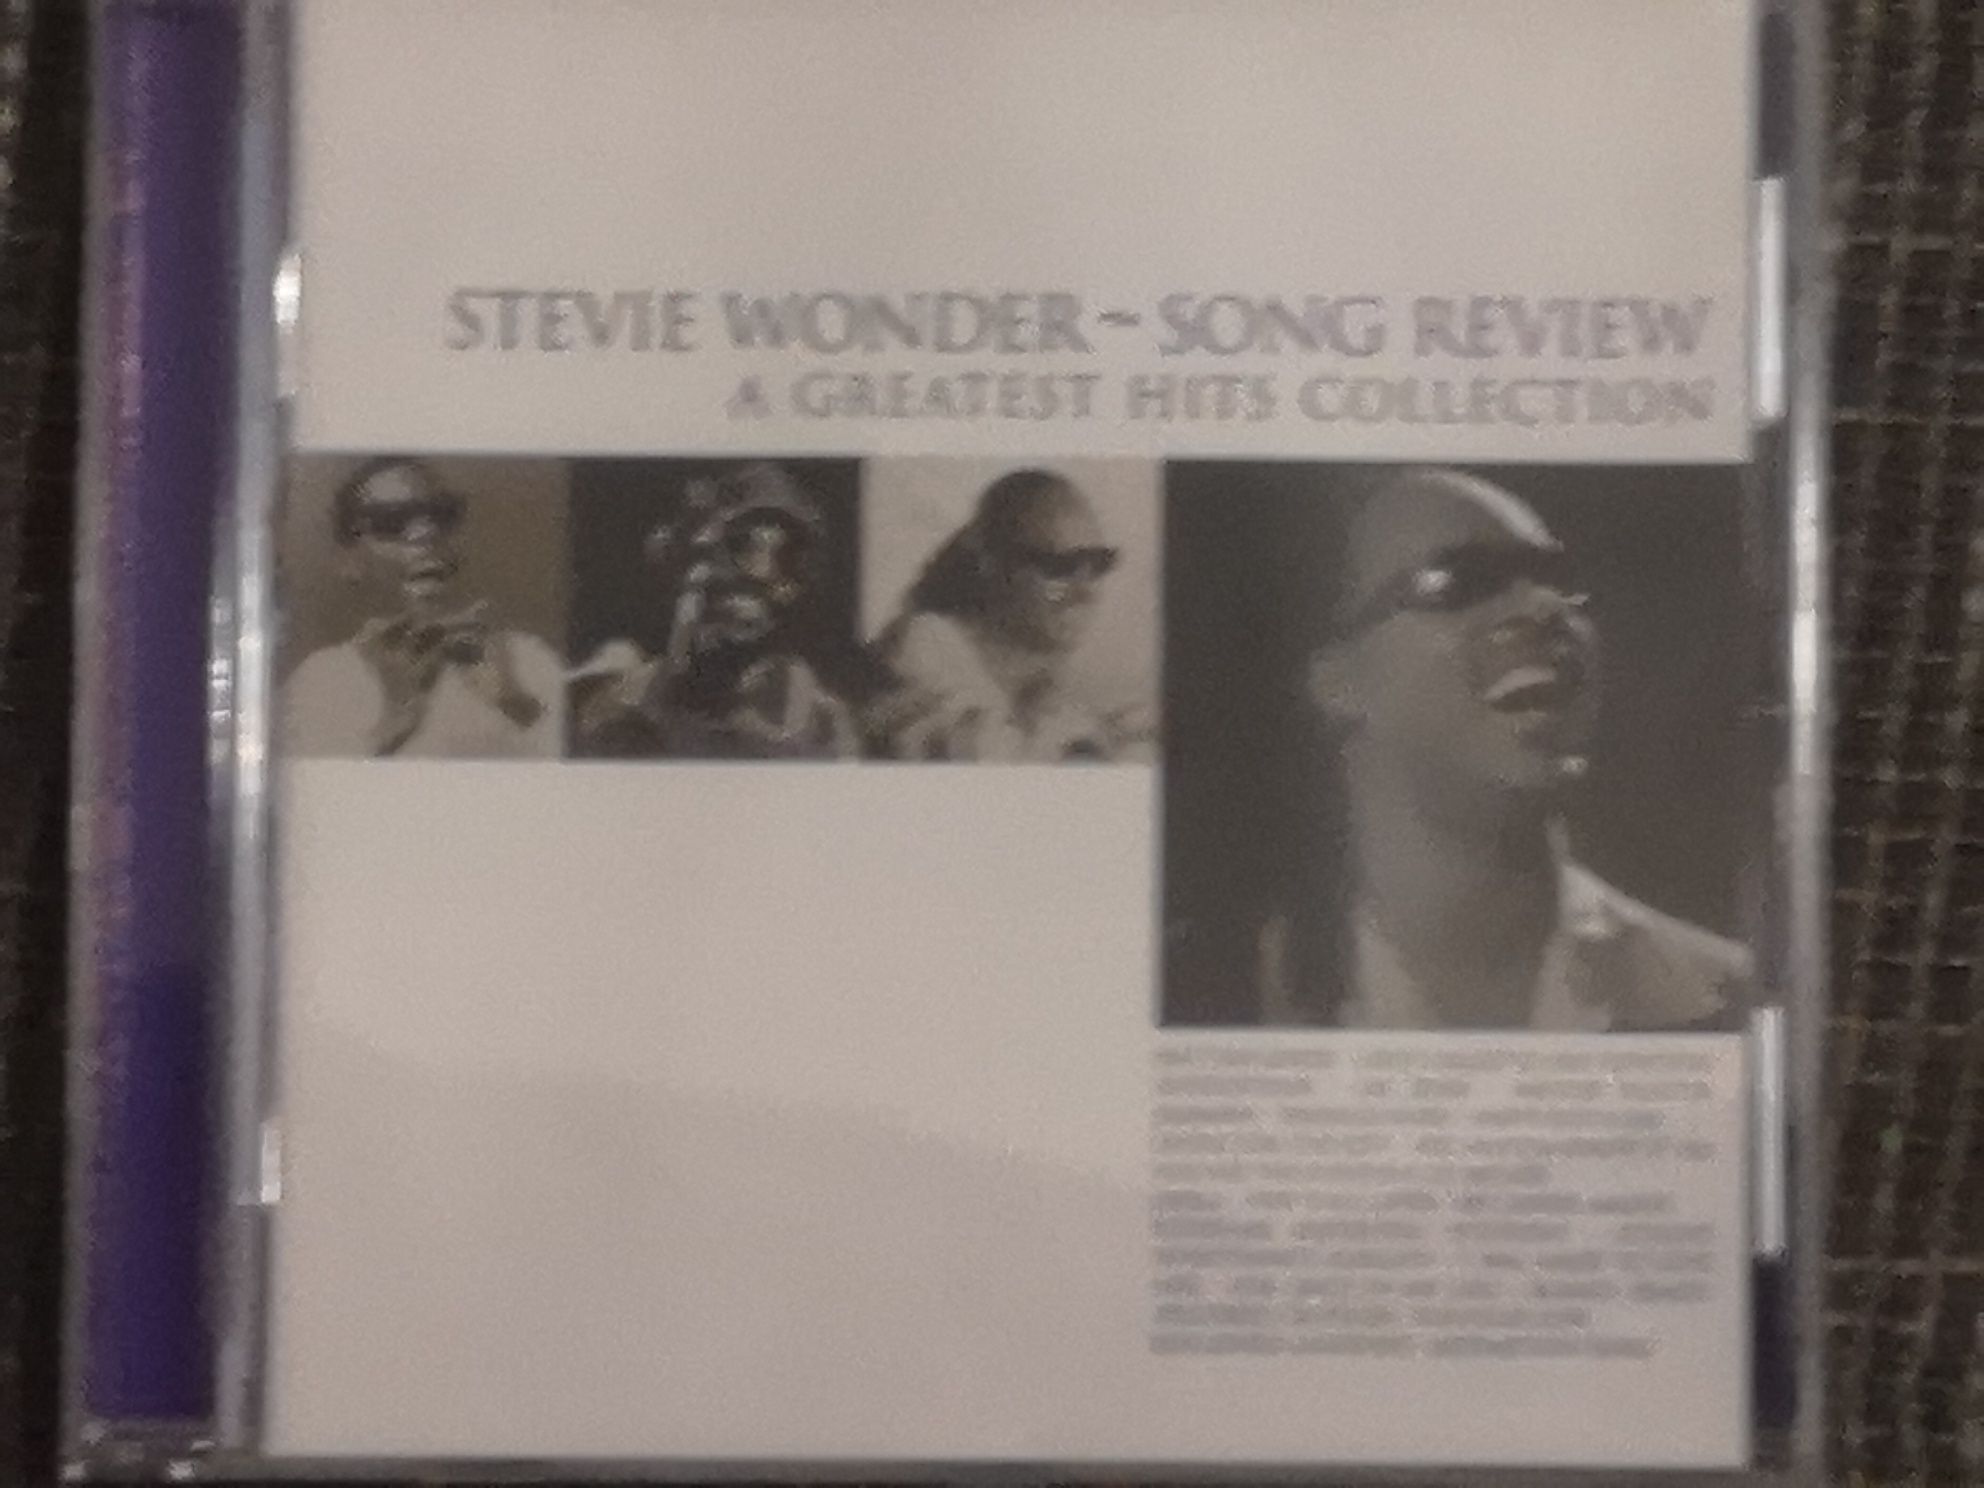 Stevie Wonder płyta cd praktycznie nowa